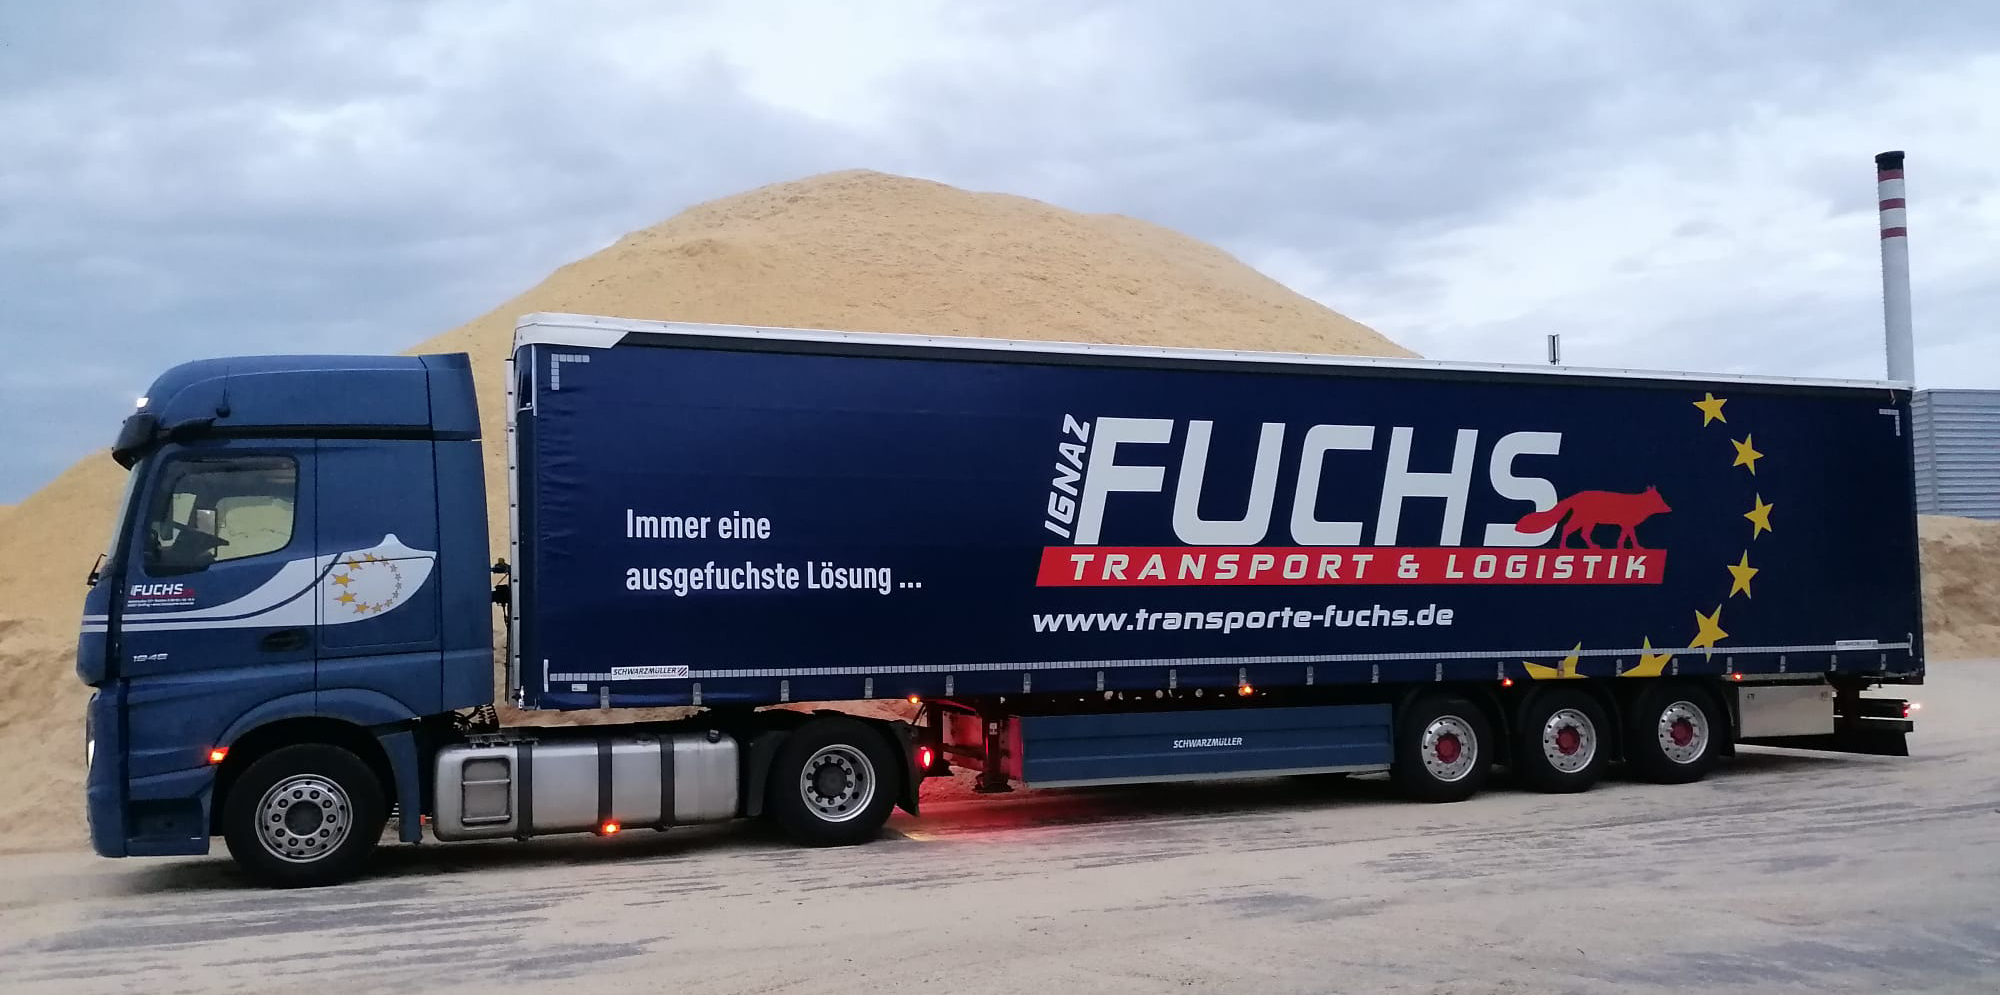 Immer ein ausgefuchste Lösung - Ihre Transporte Fuchs GmbH - LKW der hauseigenen Flotte